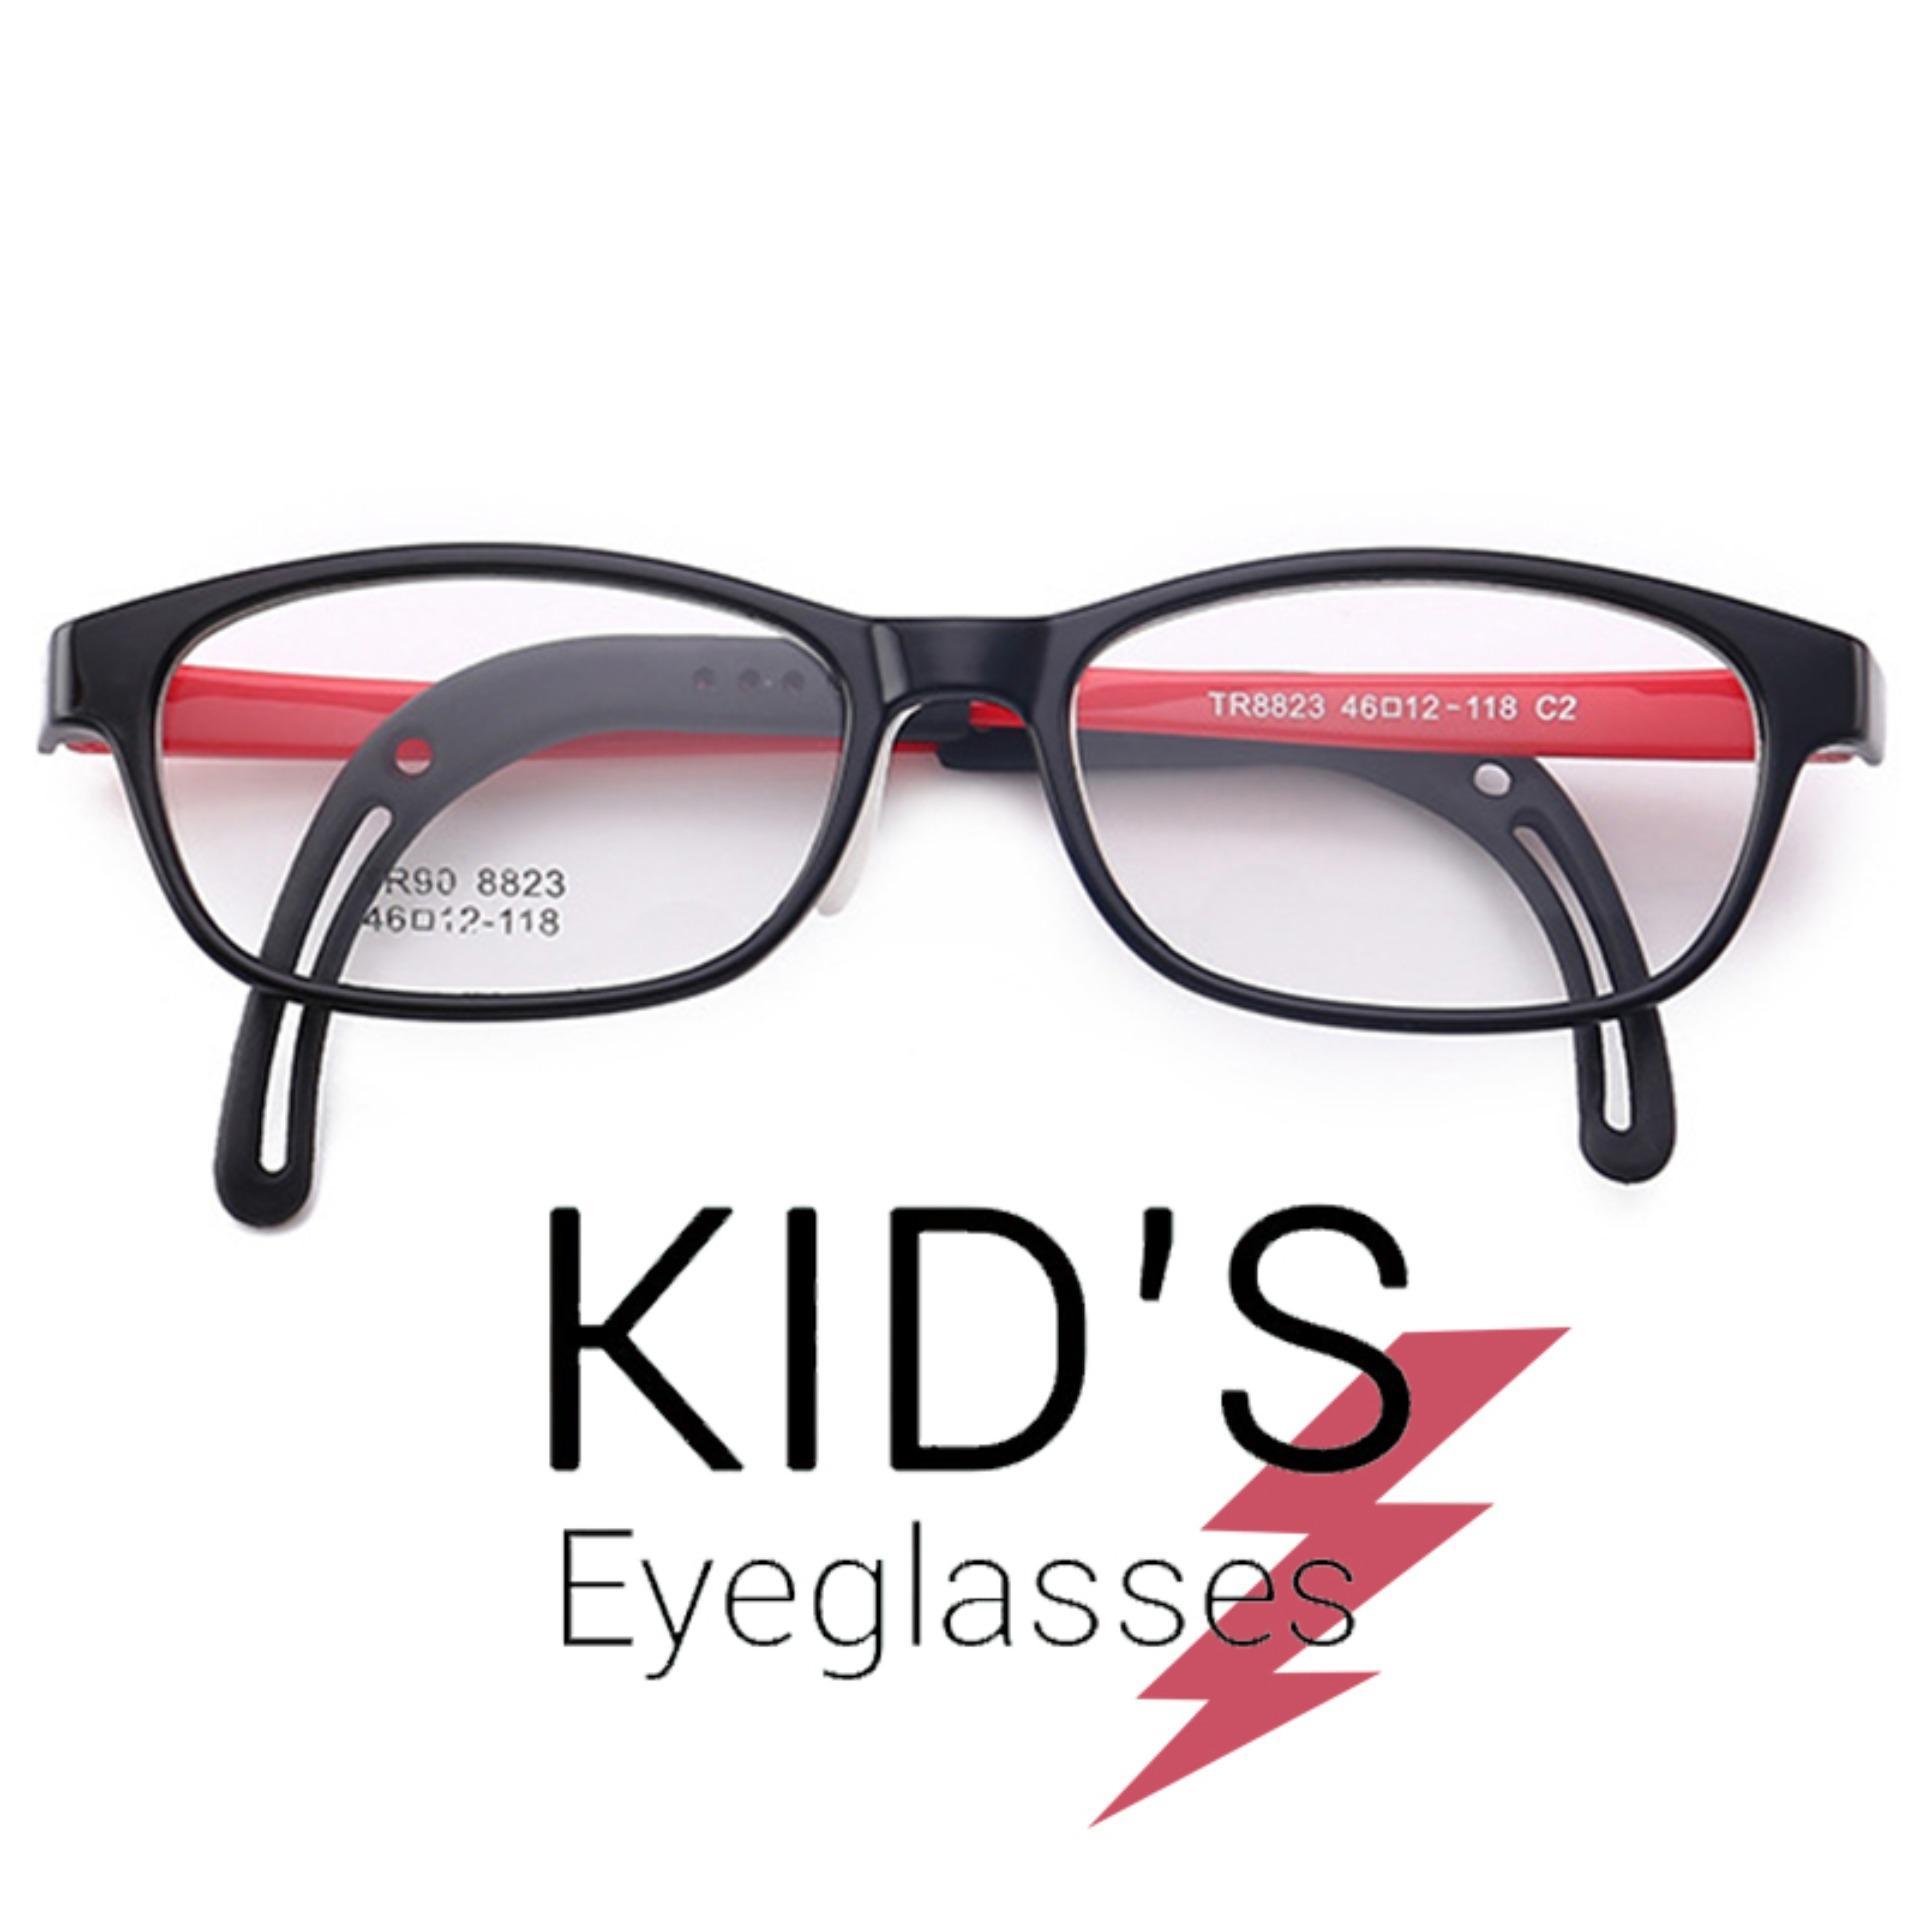 แว่นตาเกาหลีเด็ก Fashion Korea Children แว่นตาเด็ก รุ่น 8823 C-2 สีดำขาแดง กรอบแว่นตาเด็ก Square ทรงสี่เหลี่ยม Eyeglass baby frame ( สำหรับตัดเลนส์ ) วัสดุ TR-90 เบาและยืดหยุนได้สูง ขาข้อต่อ Kid eyewear Glasses